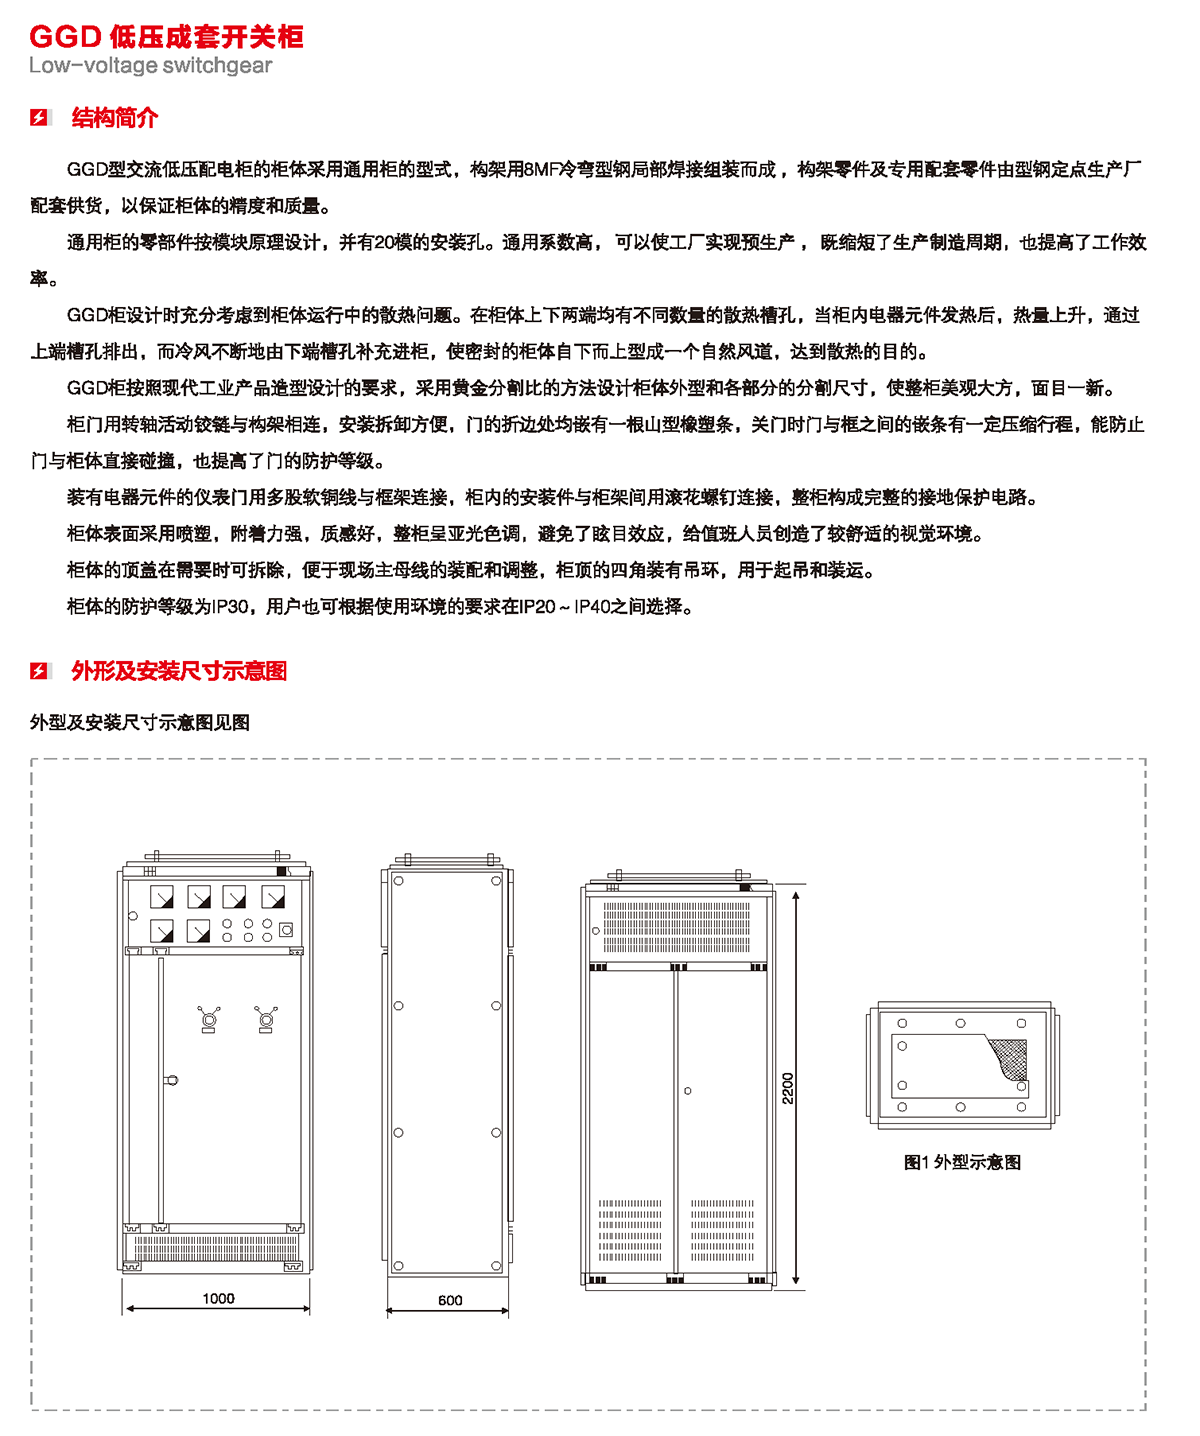 GGD低压成套开关柜结构简介、外形及安装尺寸示意图